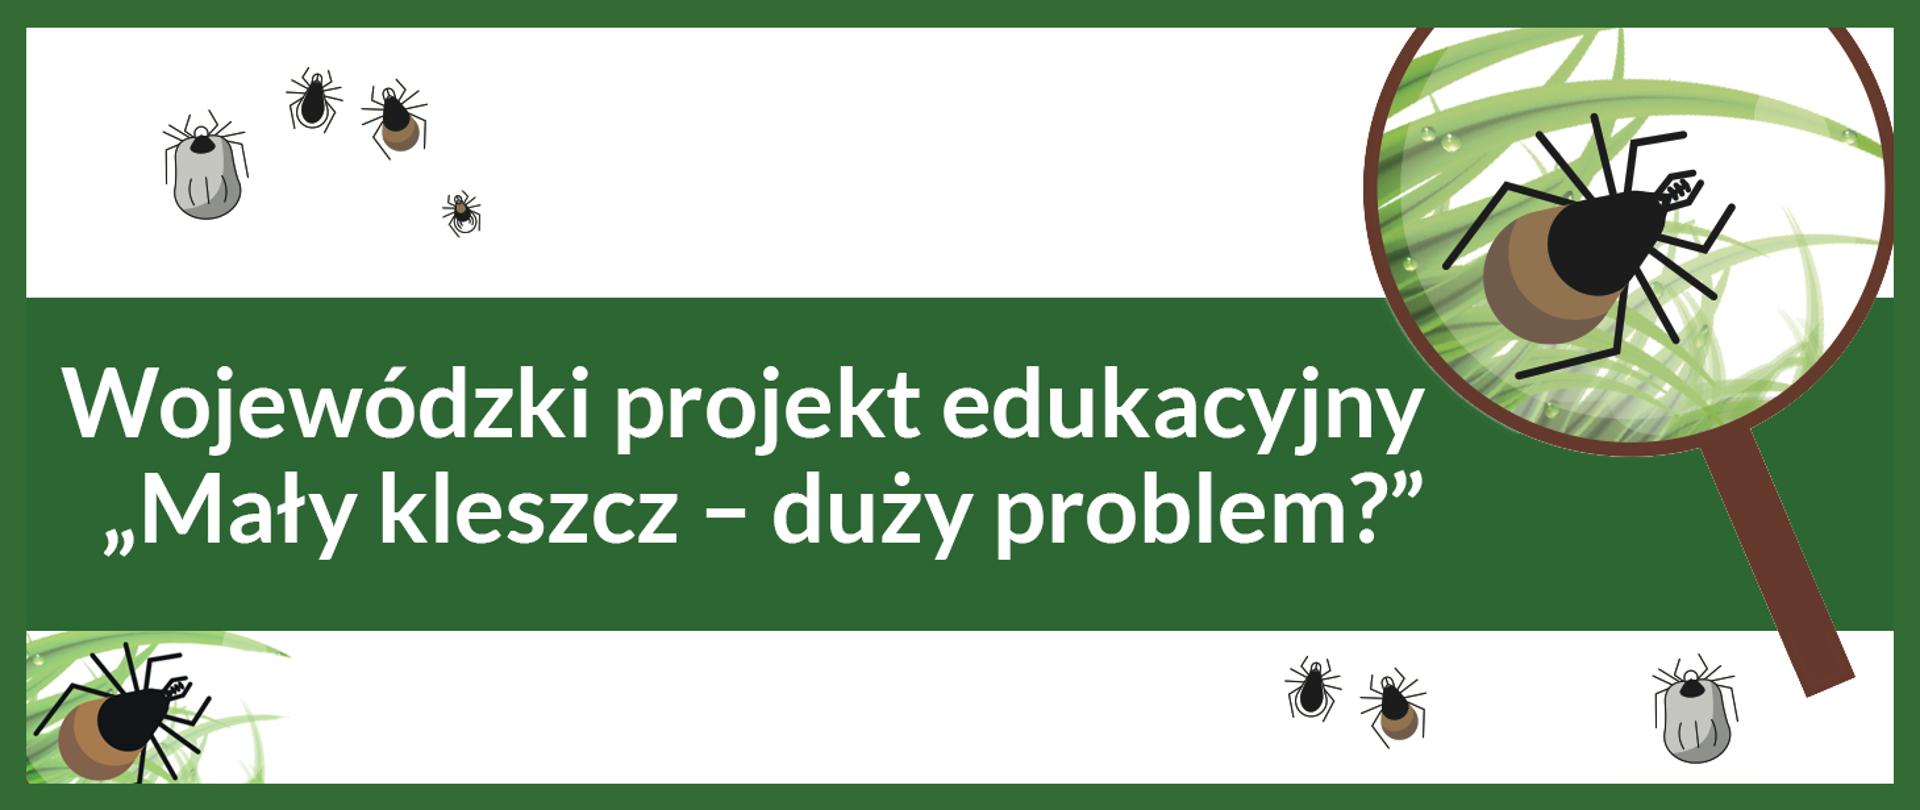 baner Wojewódzki projekt edukacyjny "Mały kleszcz - duży problem"